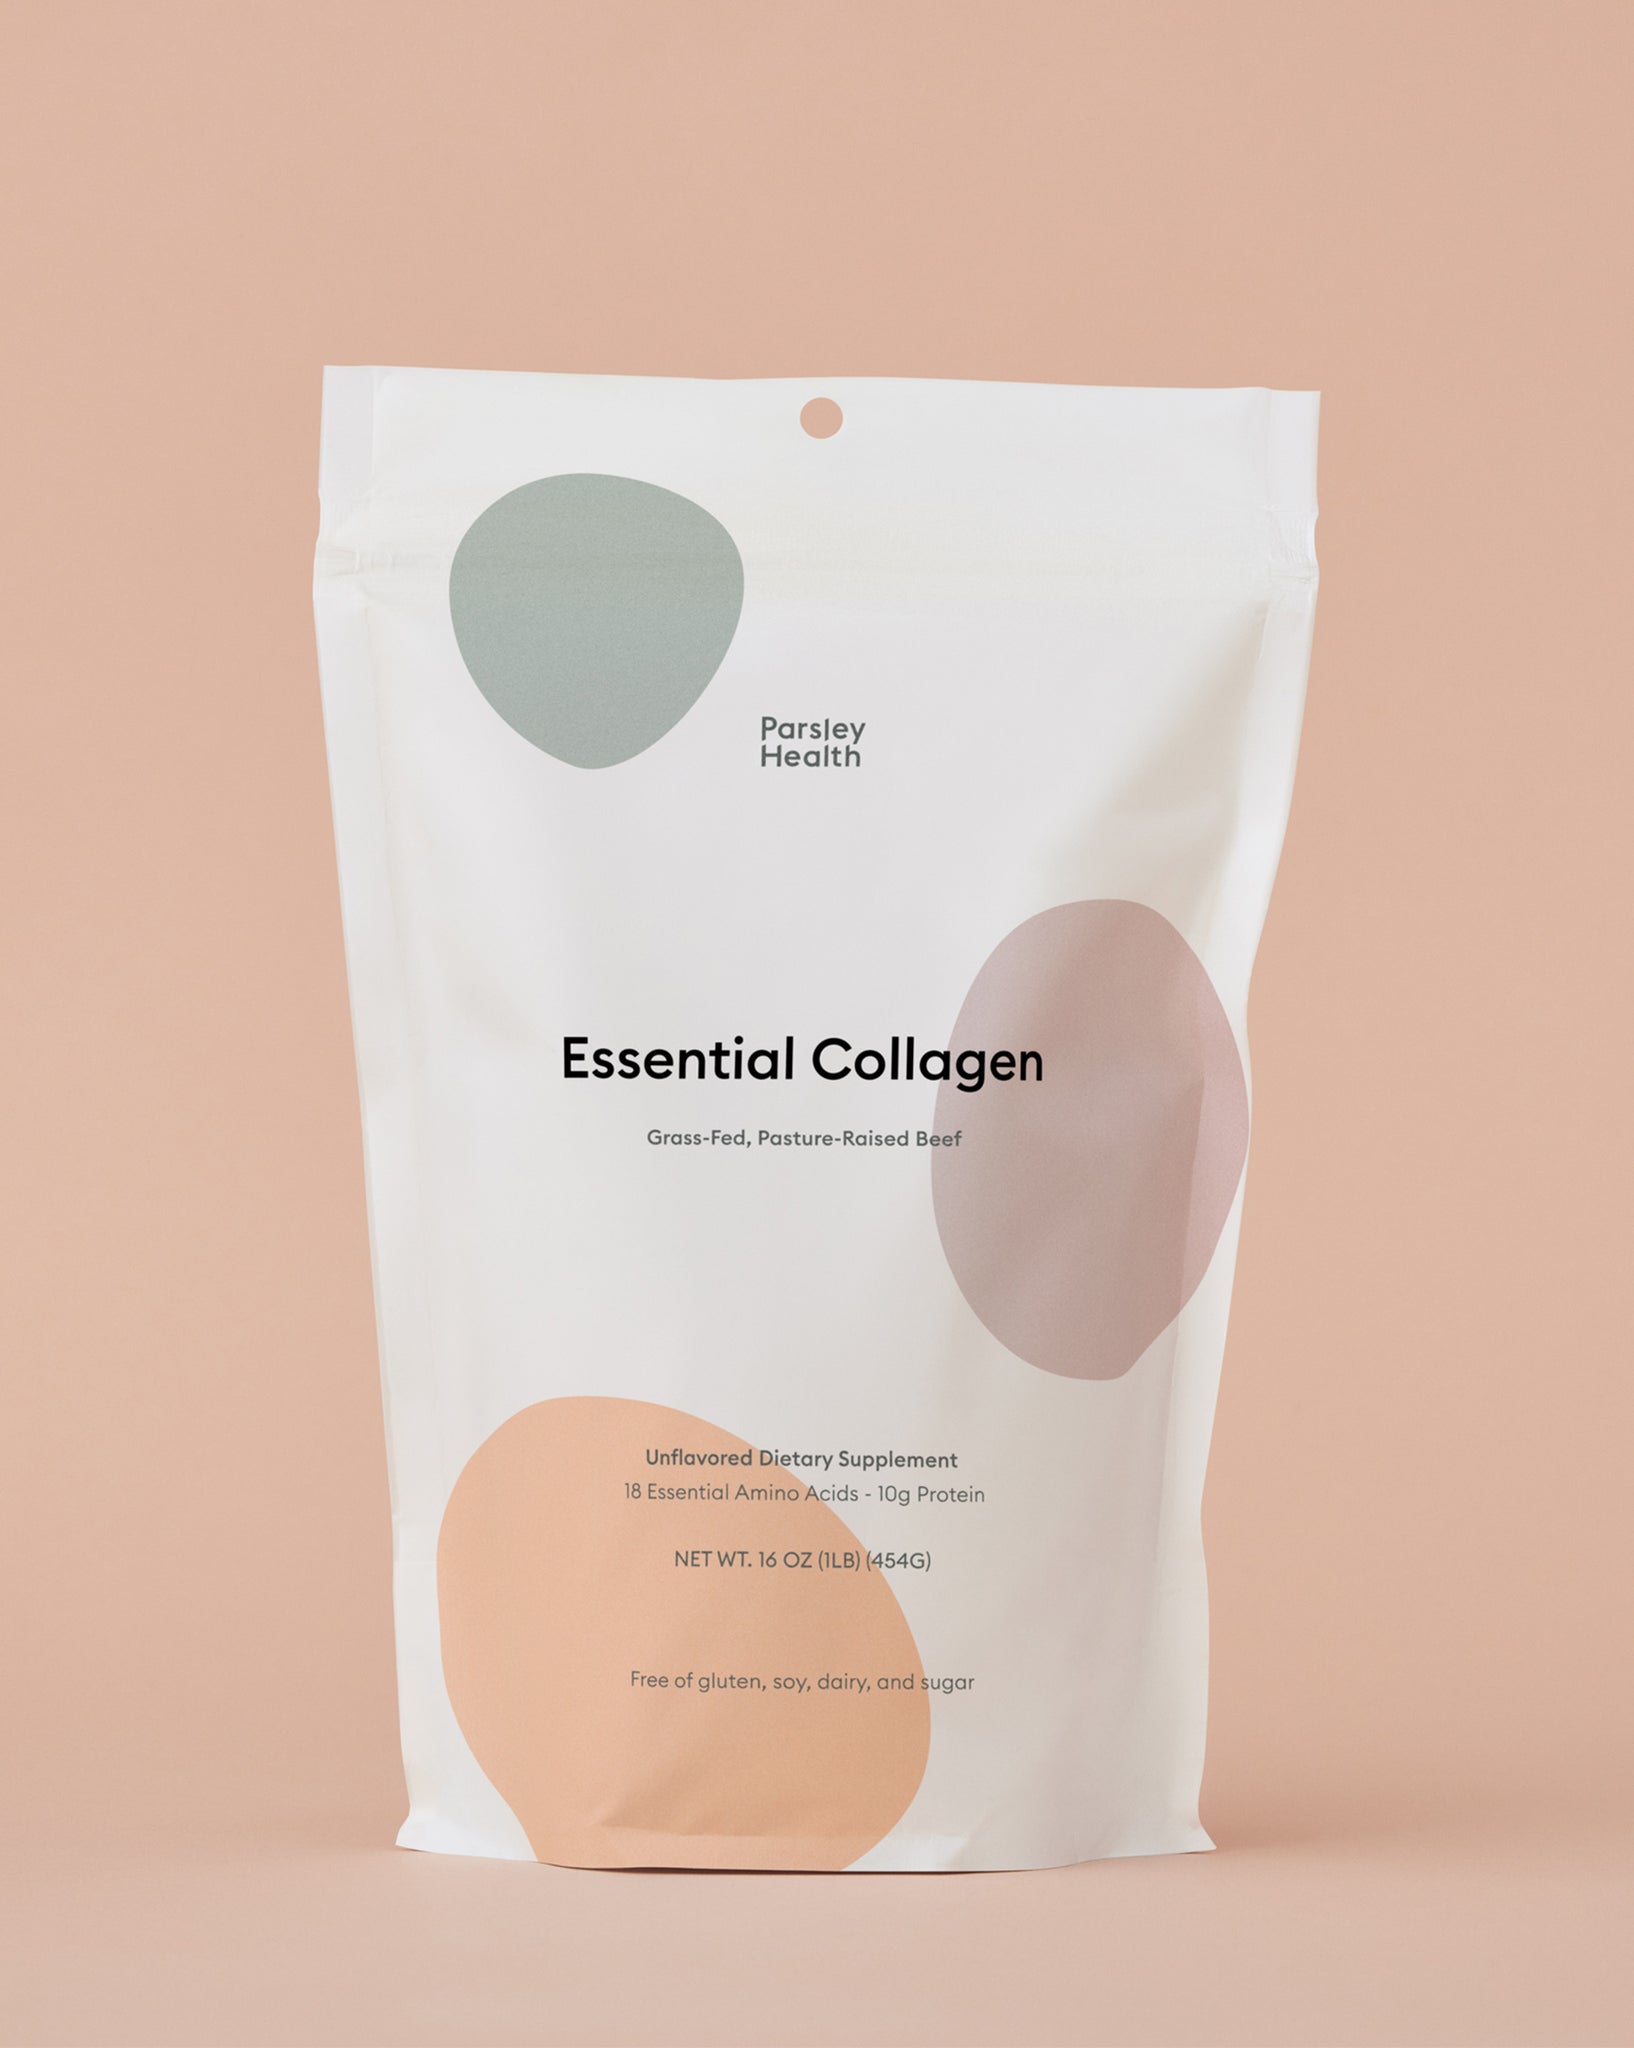 Essential Collagen